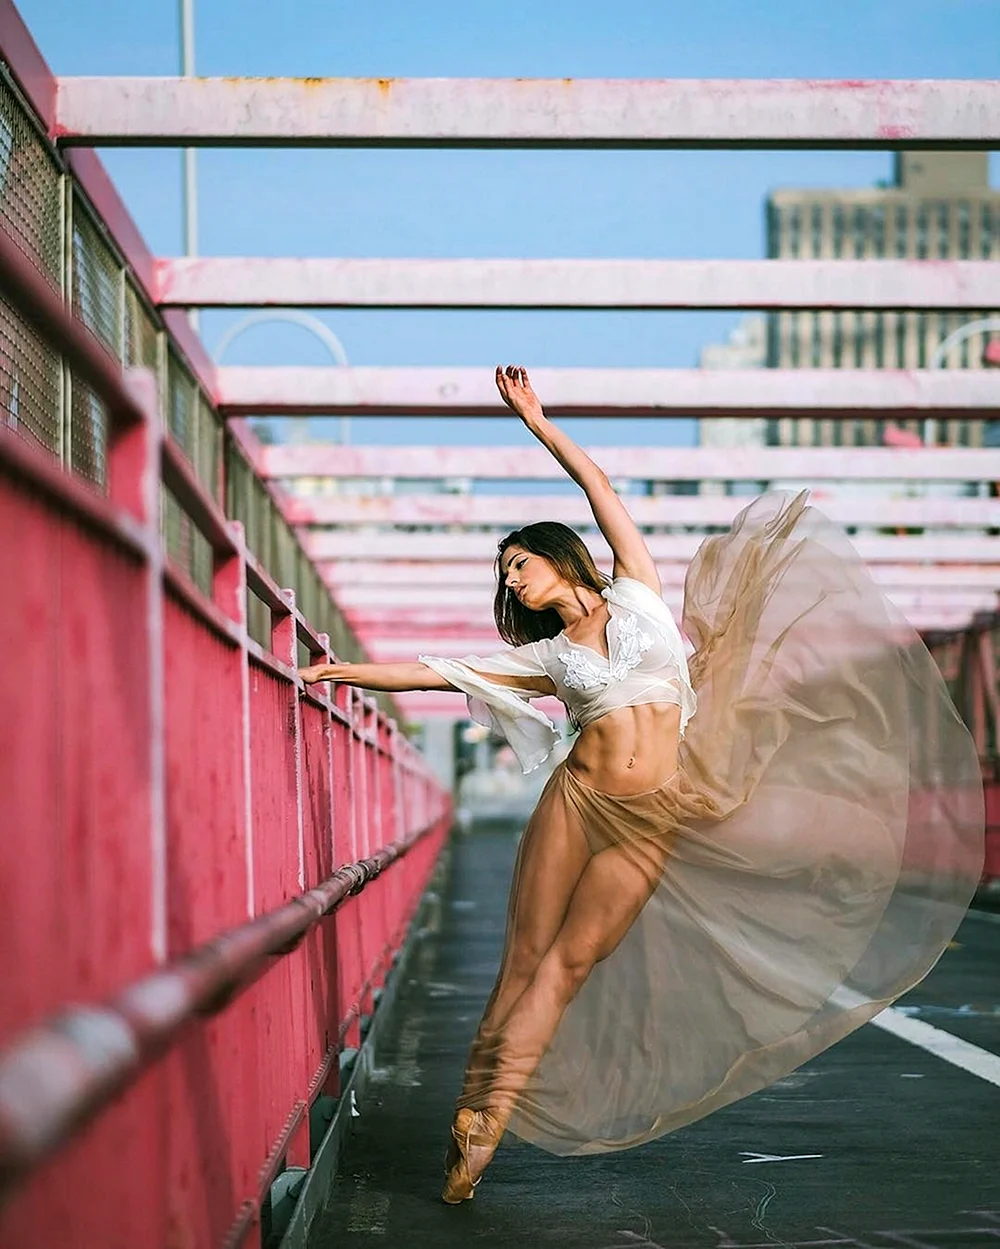 Ballerina on the Street